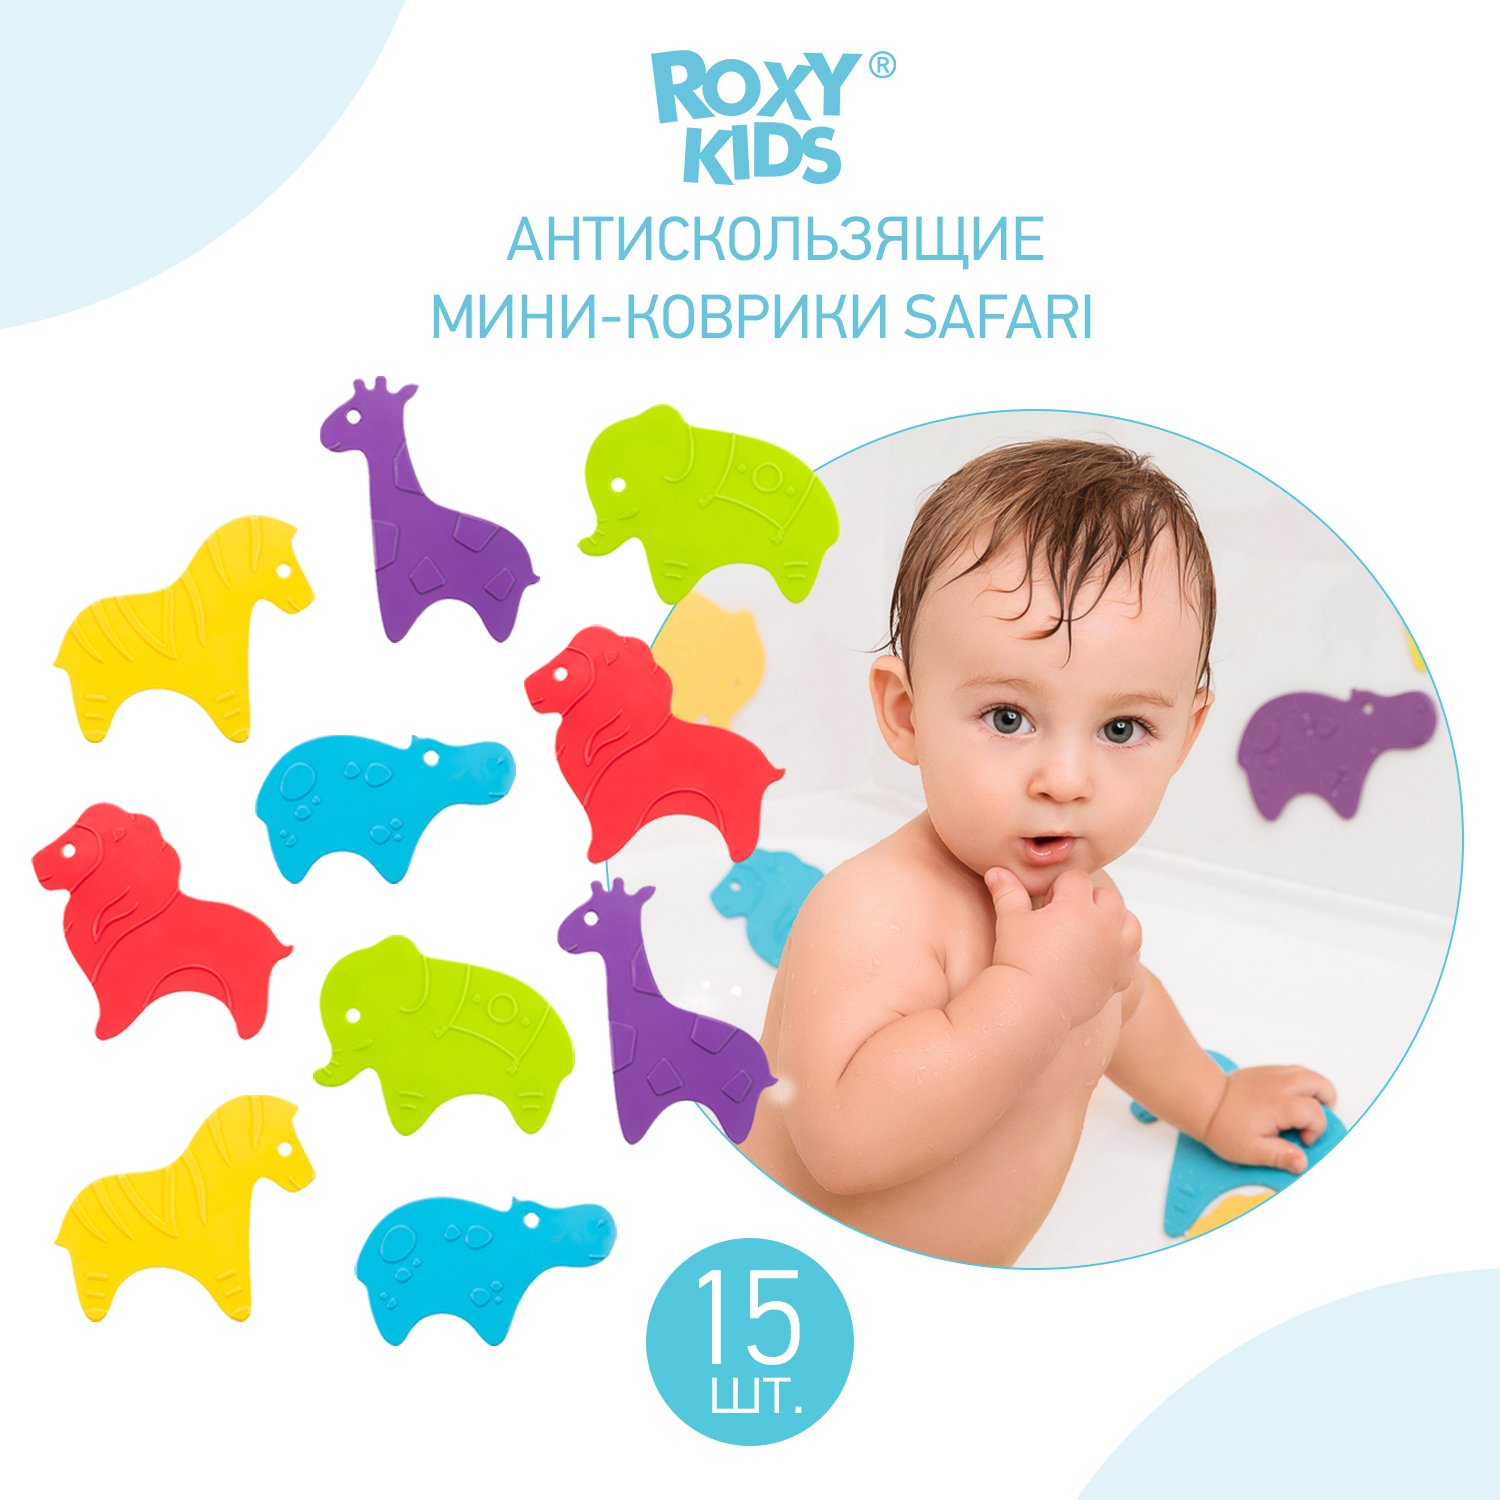 Набор мини-ковриков для ванны ROXY-KIDS Safari антискользящие 15шт RBM-015-SF - фото 5